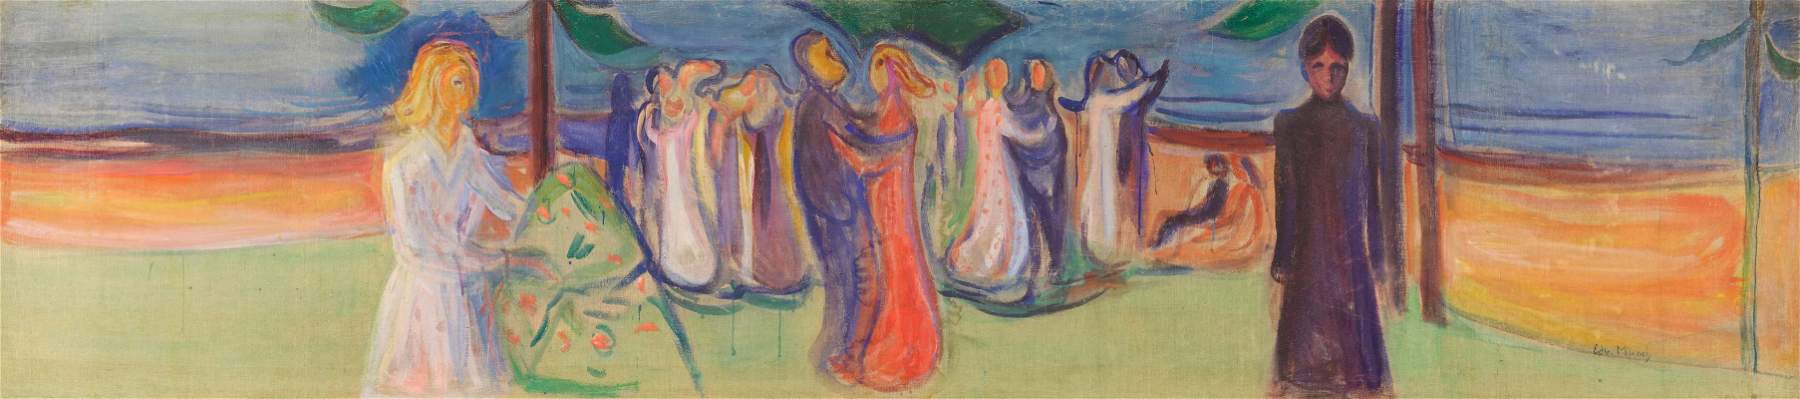 Une œuvre monumentale d'Edvard Munch est mise aux enchères chez Sotheby's: La danse sur la plage.